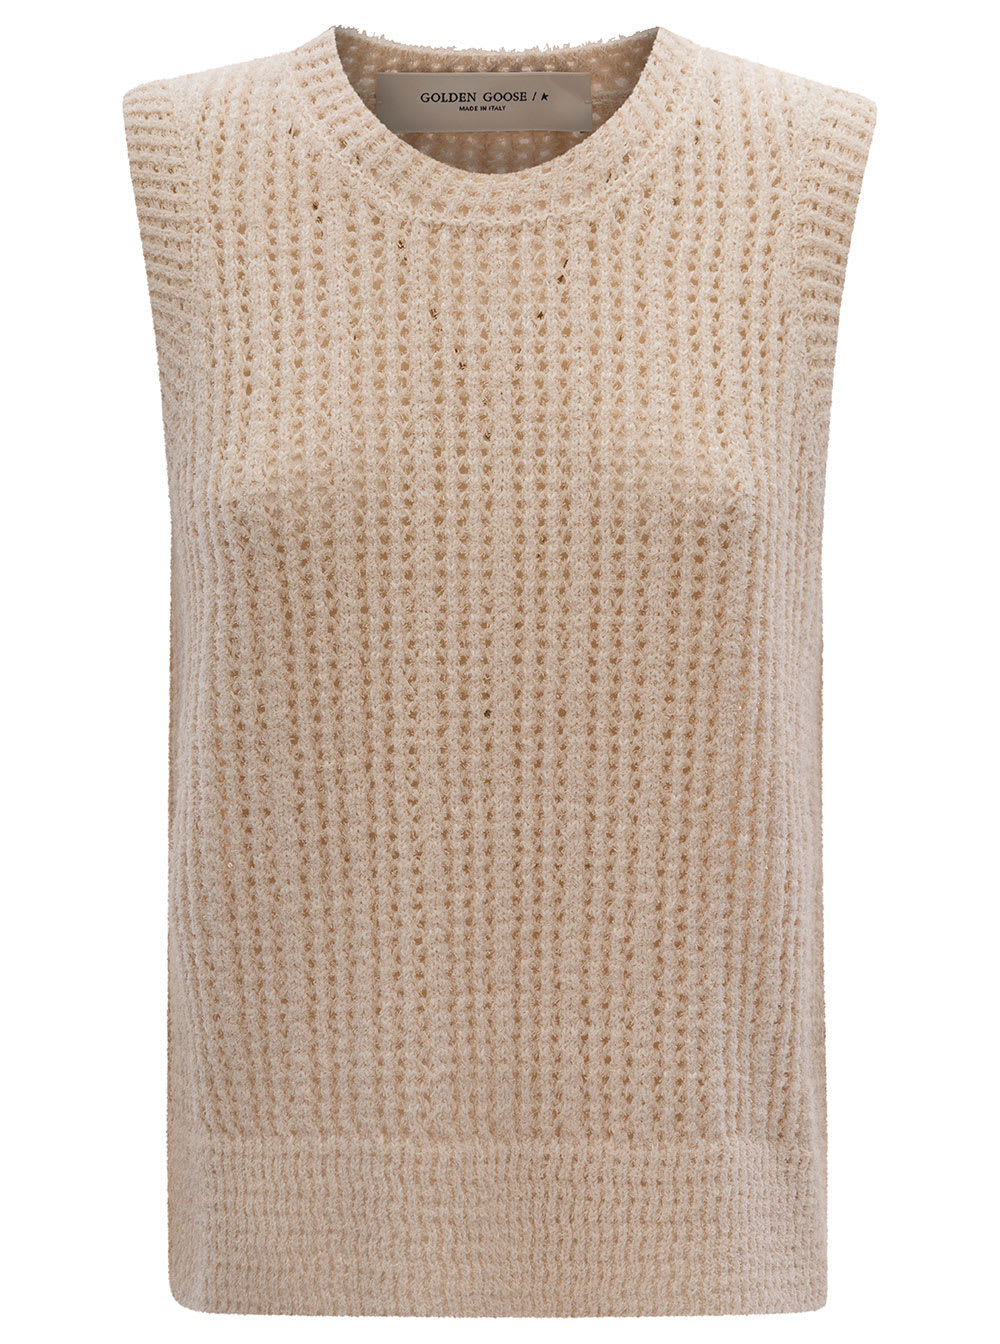 Shop Golden Goose Beige Crochet Sleeveless Top In Cotton Blend Woman